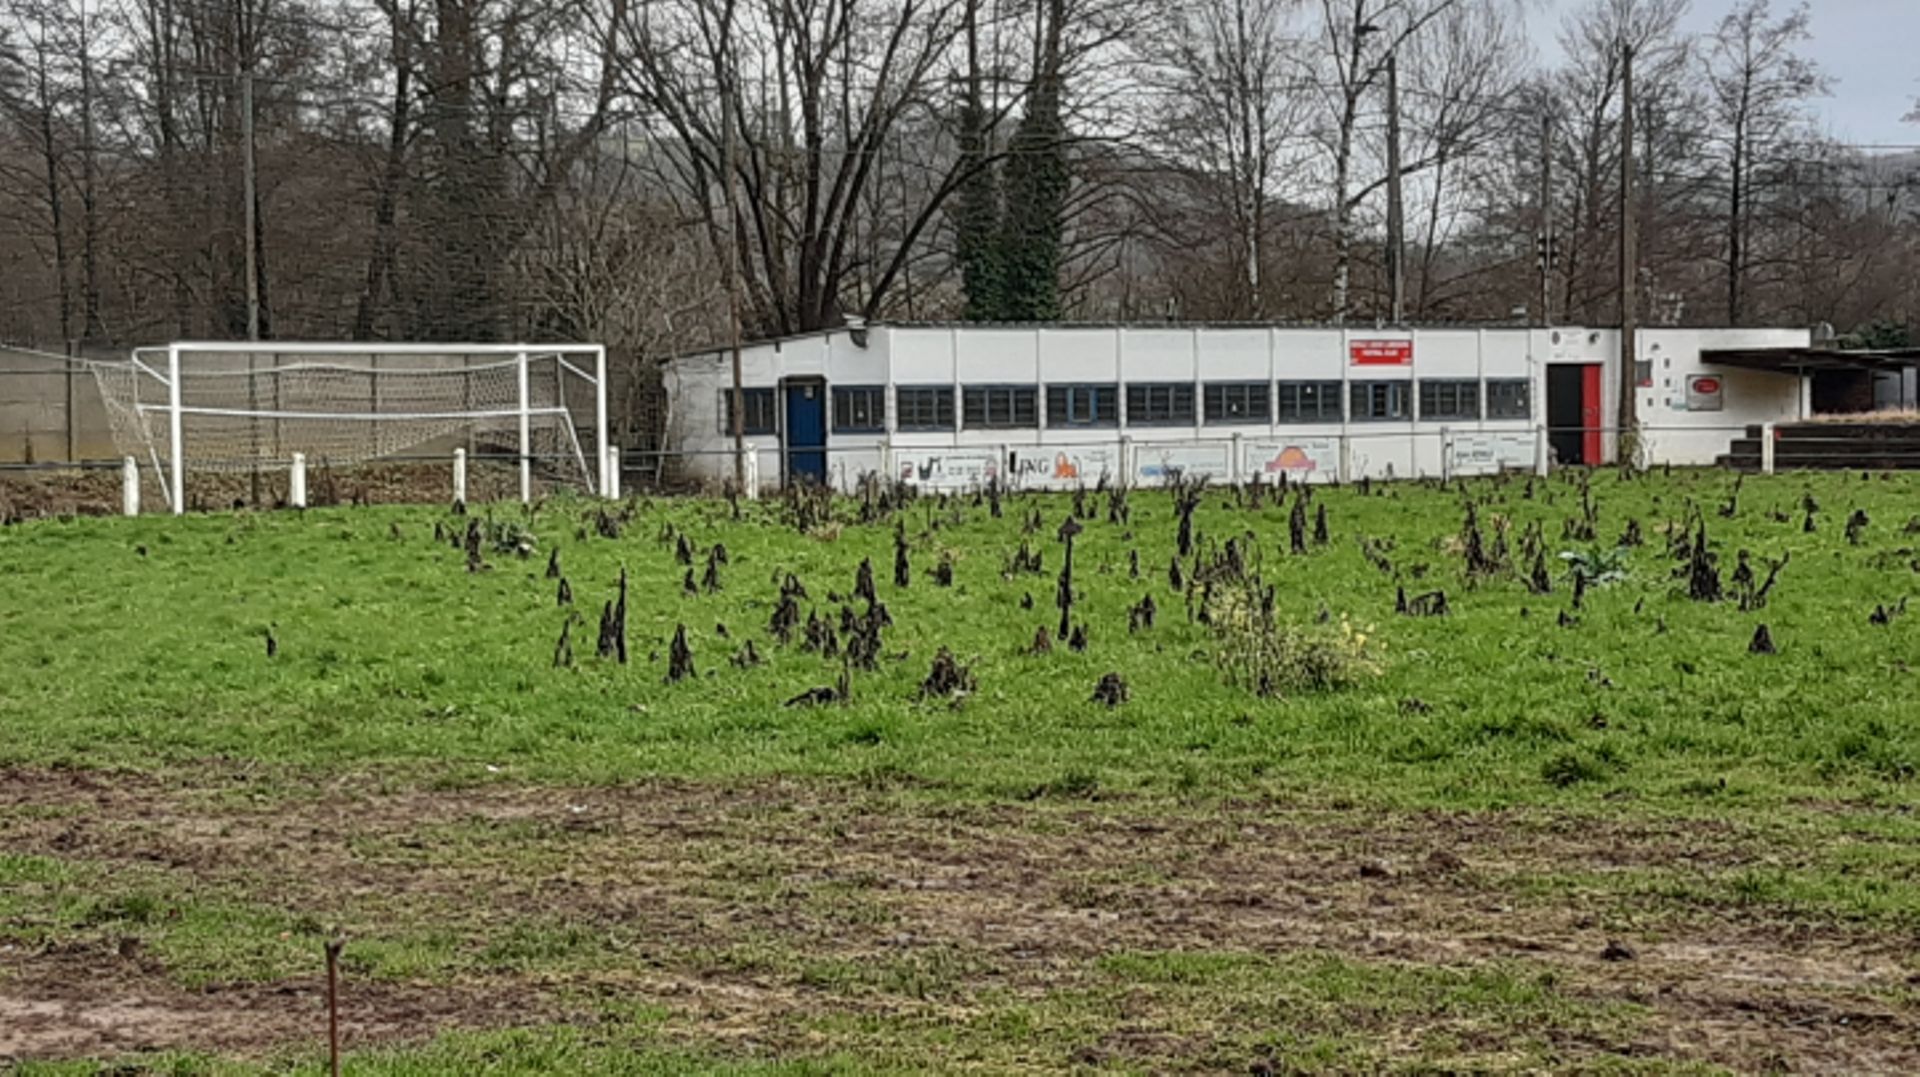 Image triste des installations de l’Union Limbourg, l’un des plus vieux clubs de Belgique ; le club est hébergé à Baelen en attendant une rénovation complète.